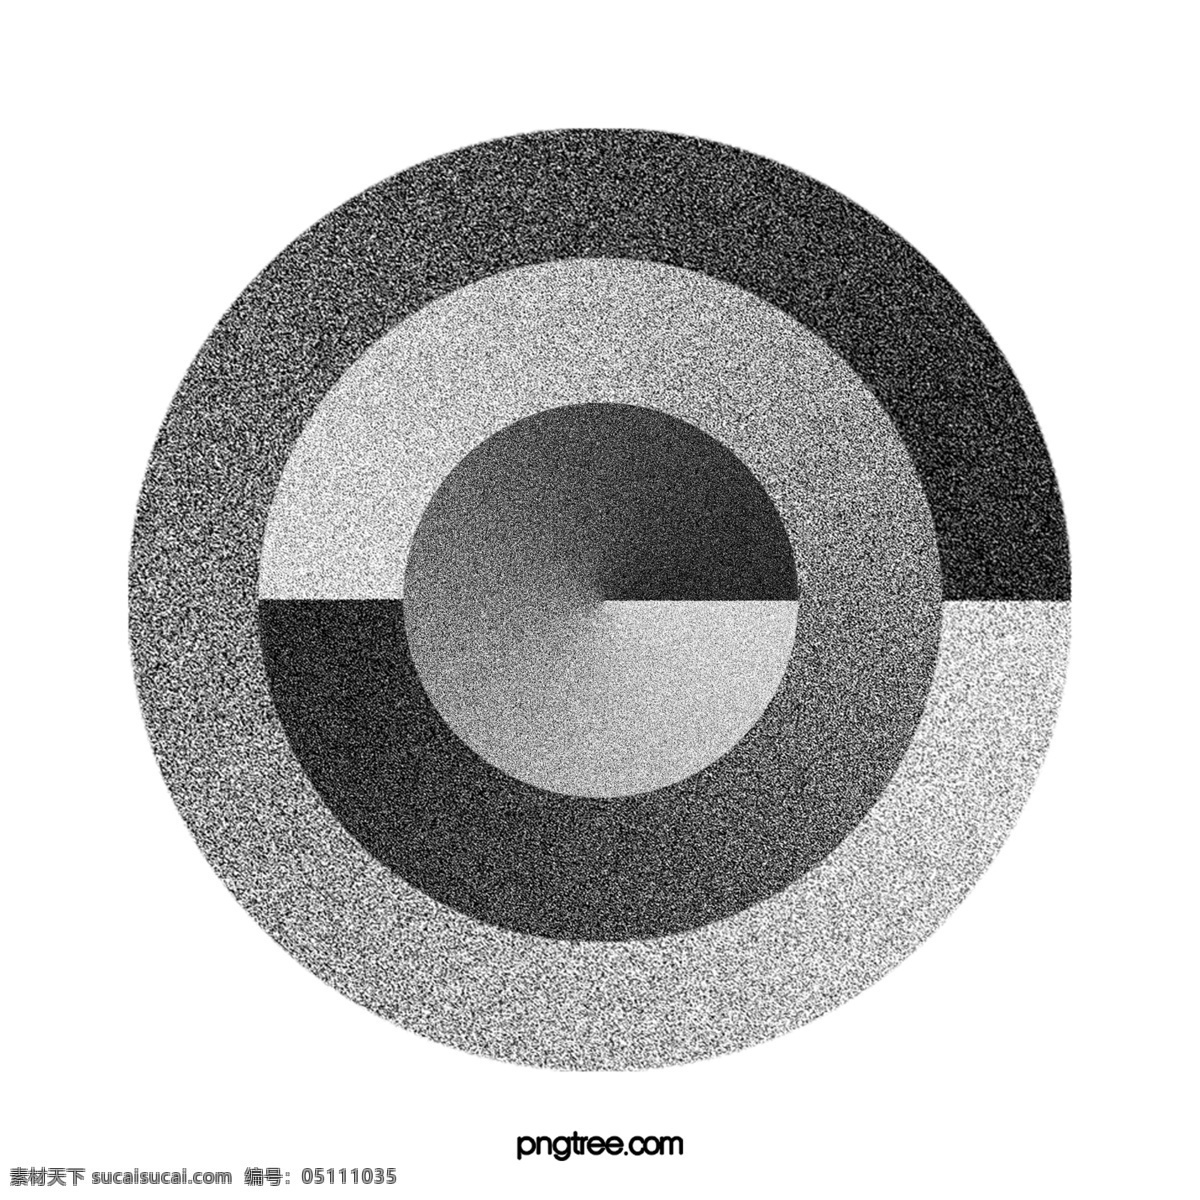 黑色 抽象 噪 点 肌理 徽标 肌理噪点 噪点 抽象圆形 圆形 立体圆形 单个 元素 矢量 素 分层